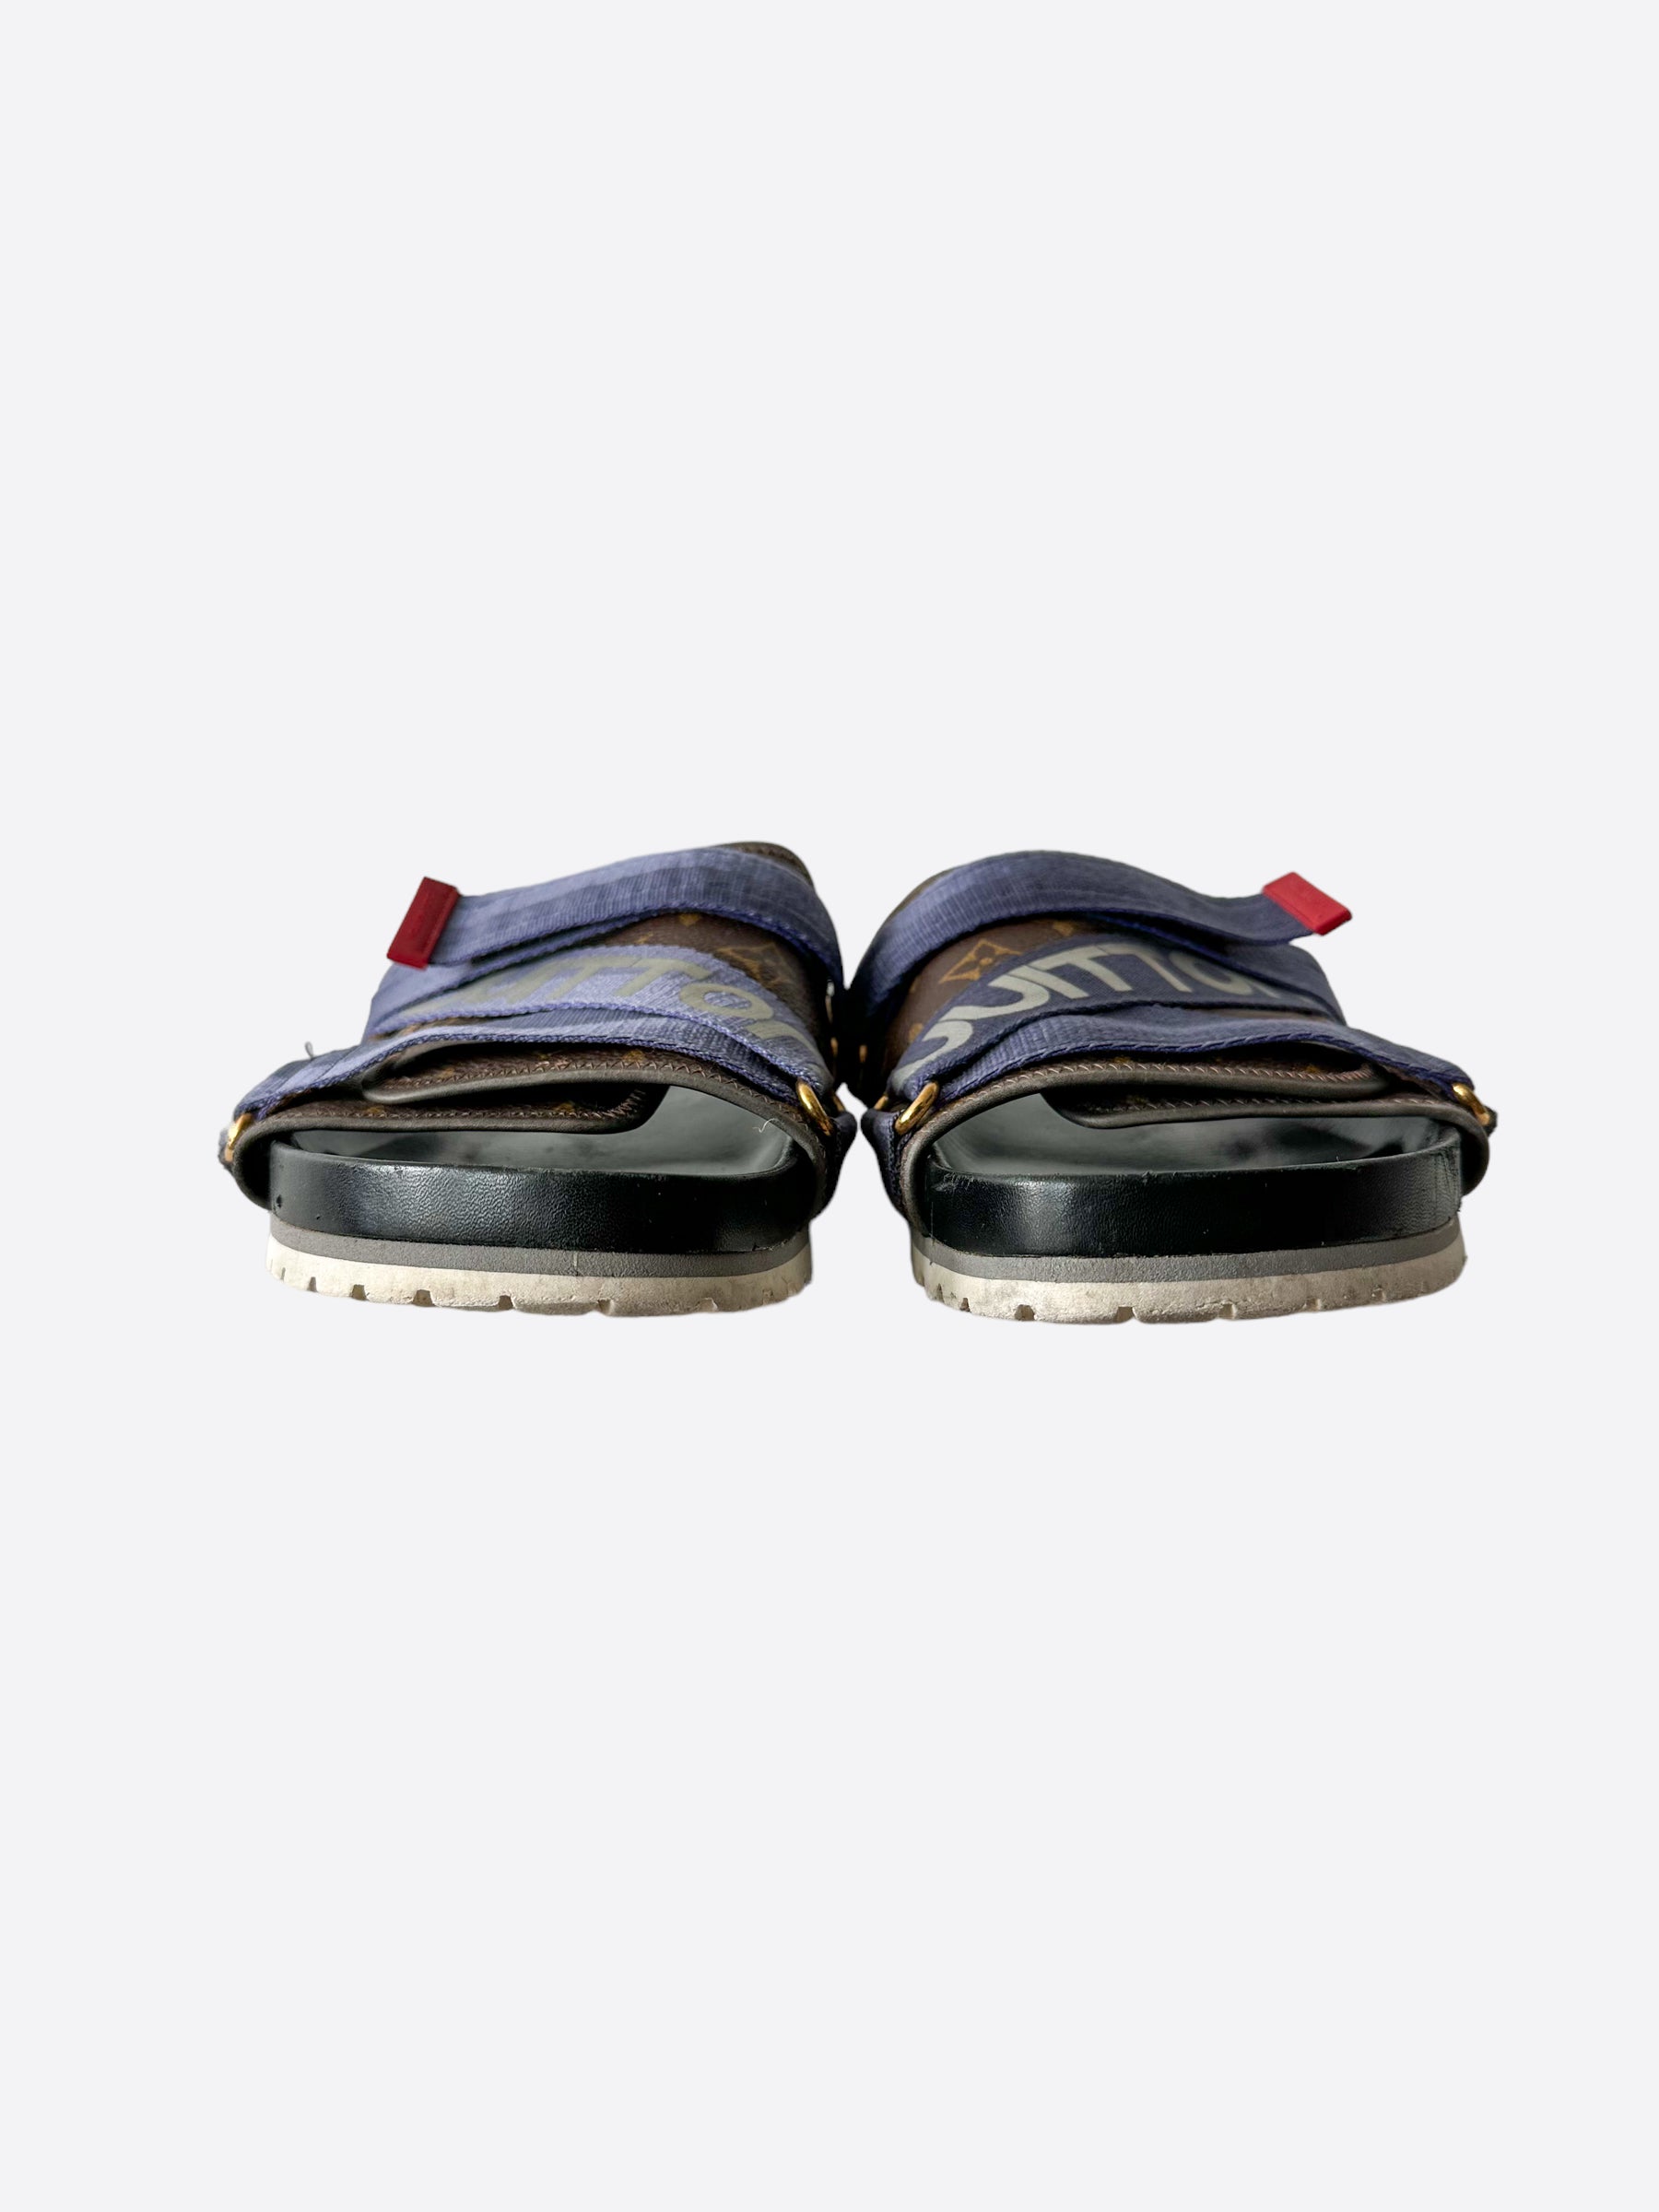 Replica Louis Vuitton Men's Sandals Collection